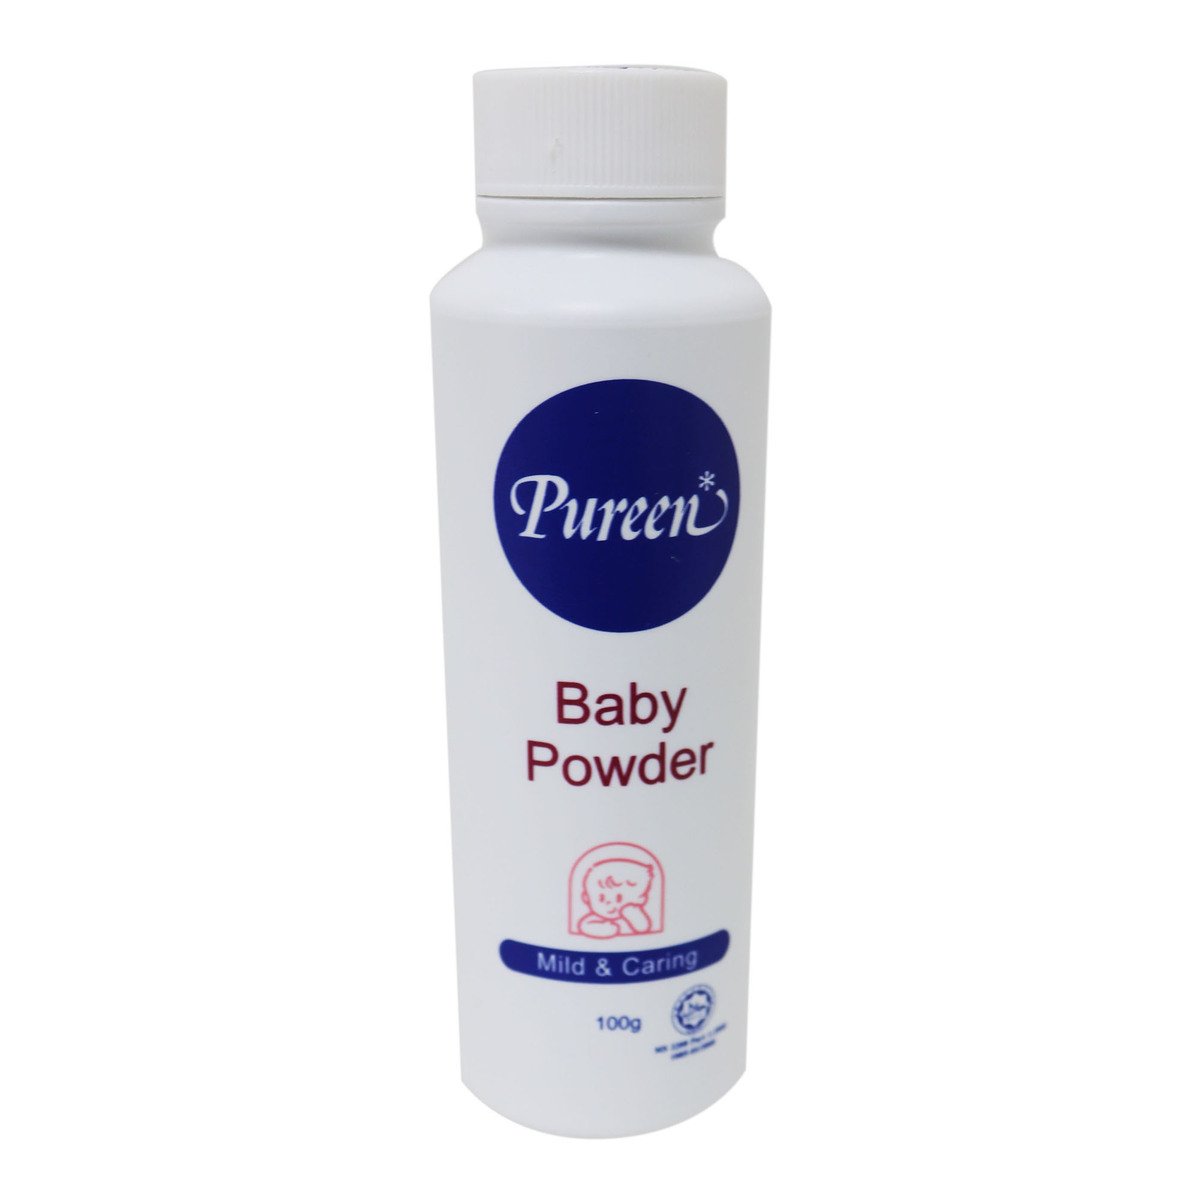 Pureen Baby Powder 100g